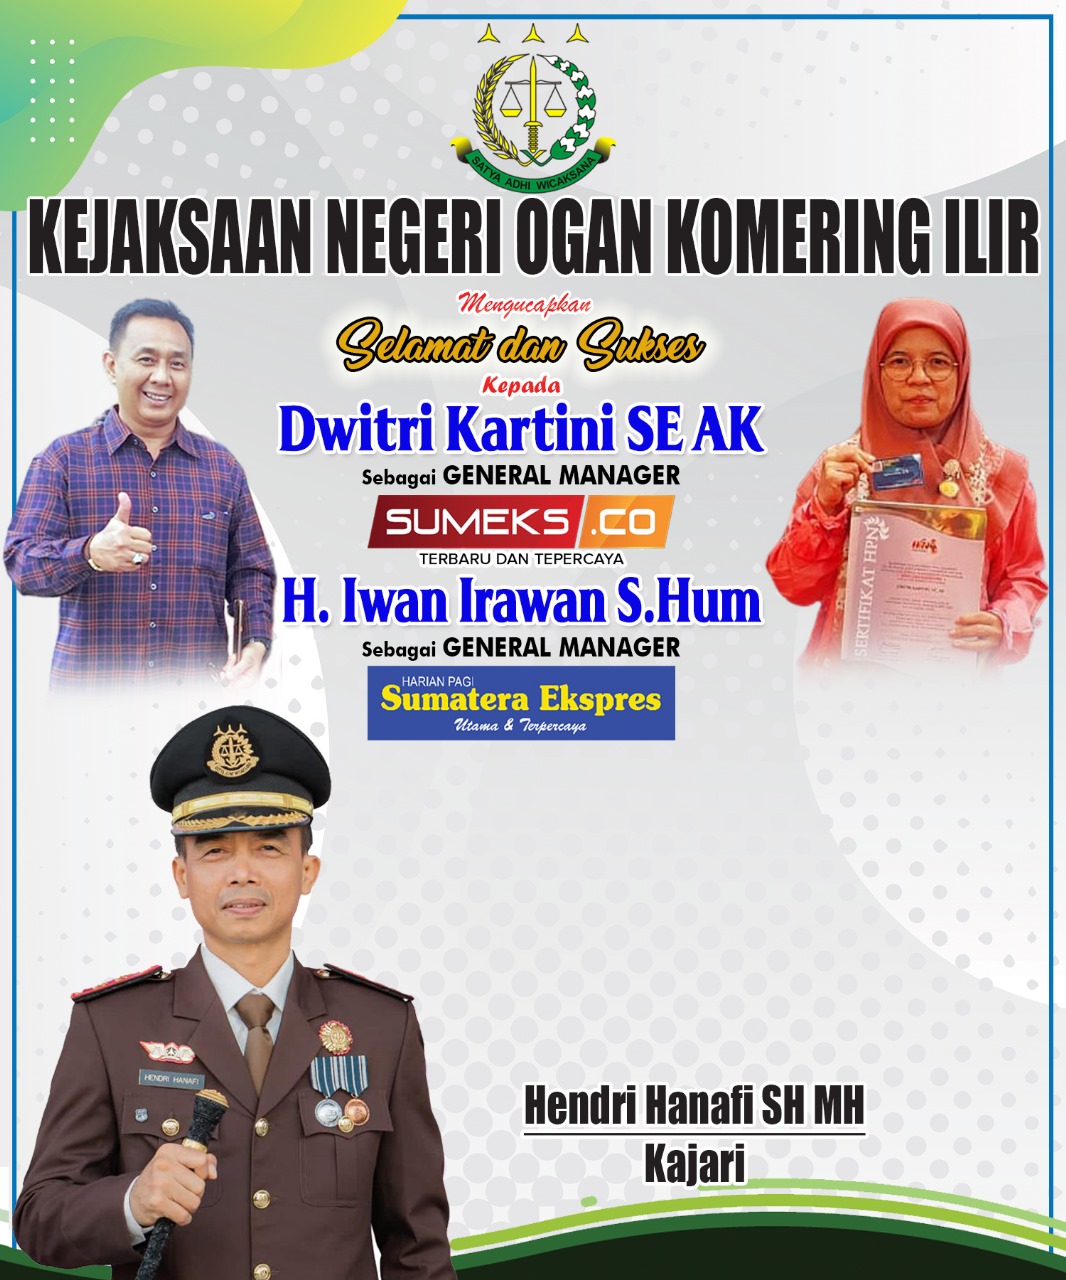 Kajari Ogan Komering Ilir Mengucapkan Selamat dan Sukses Kepada H. Iwan Irawan dan Dwitri Kartini